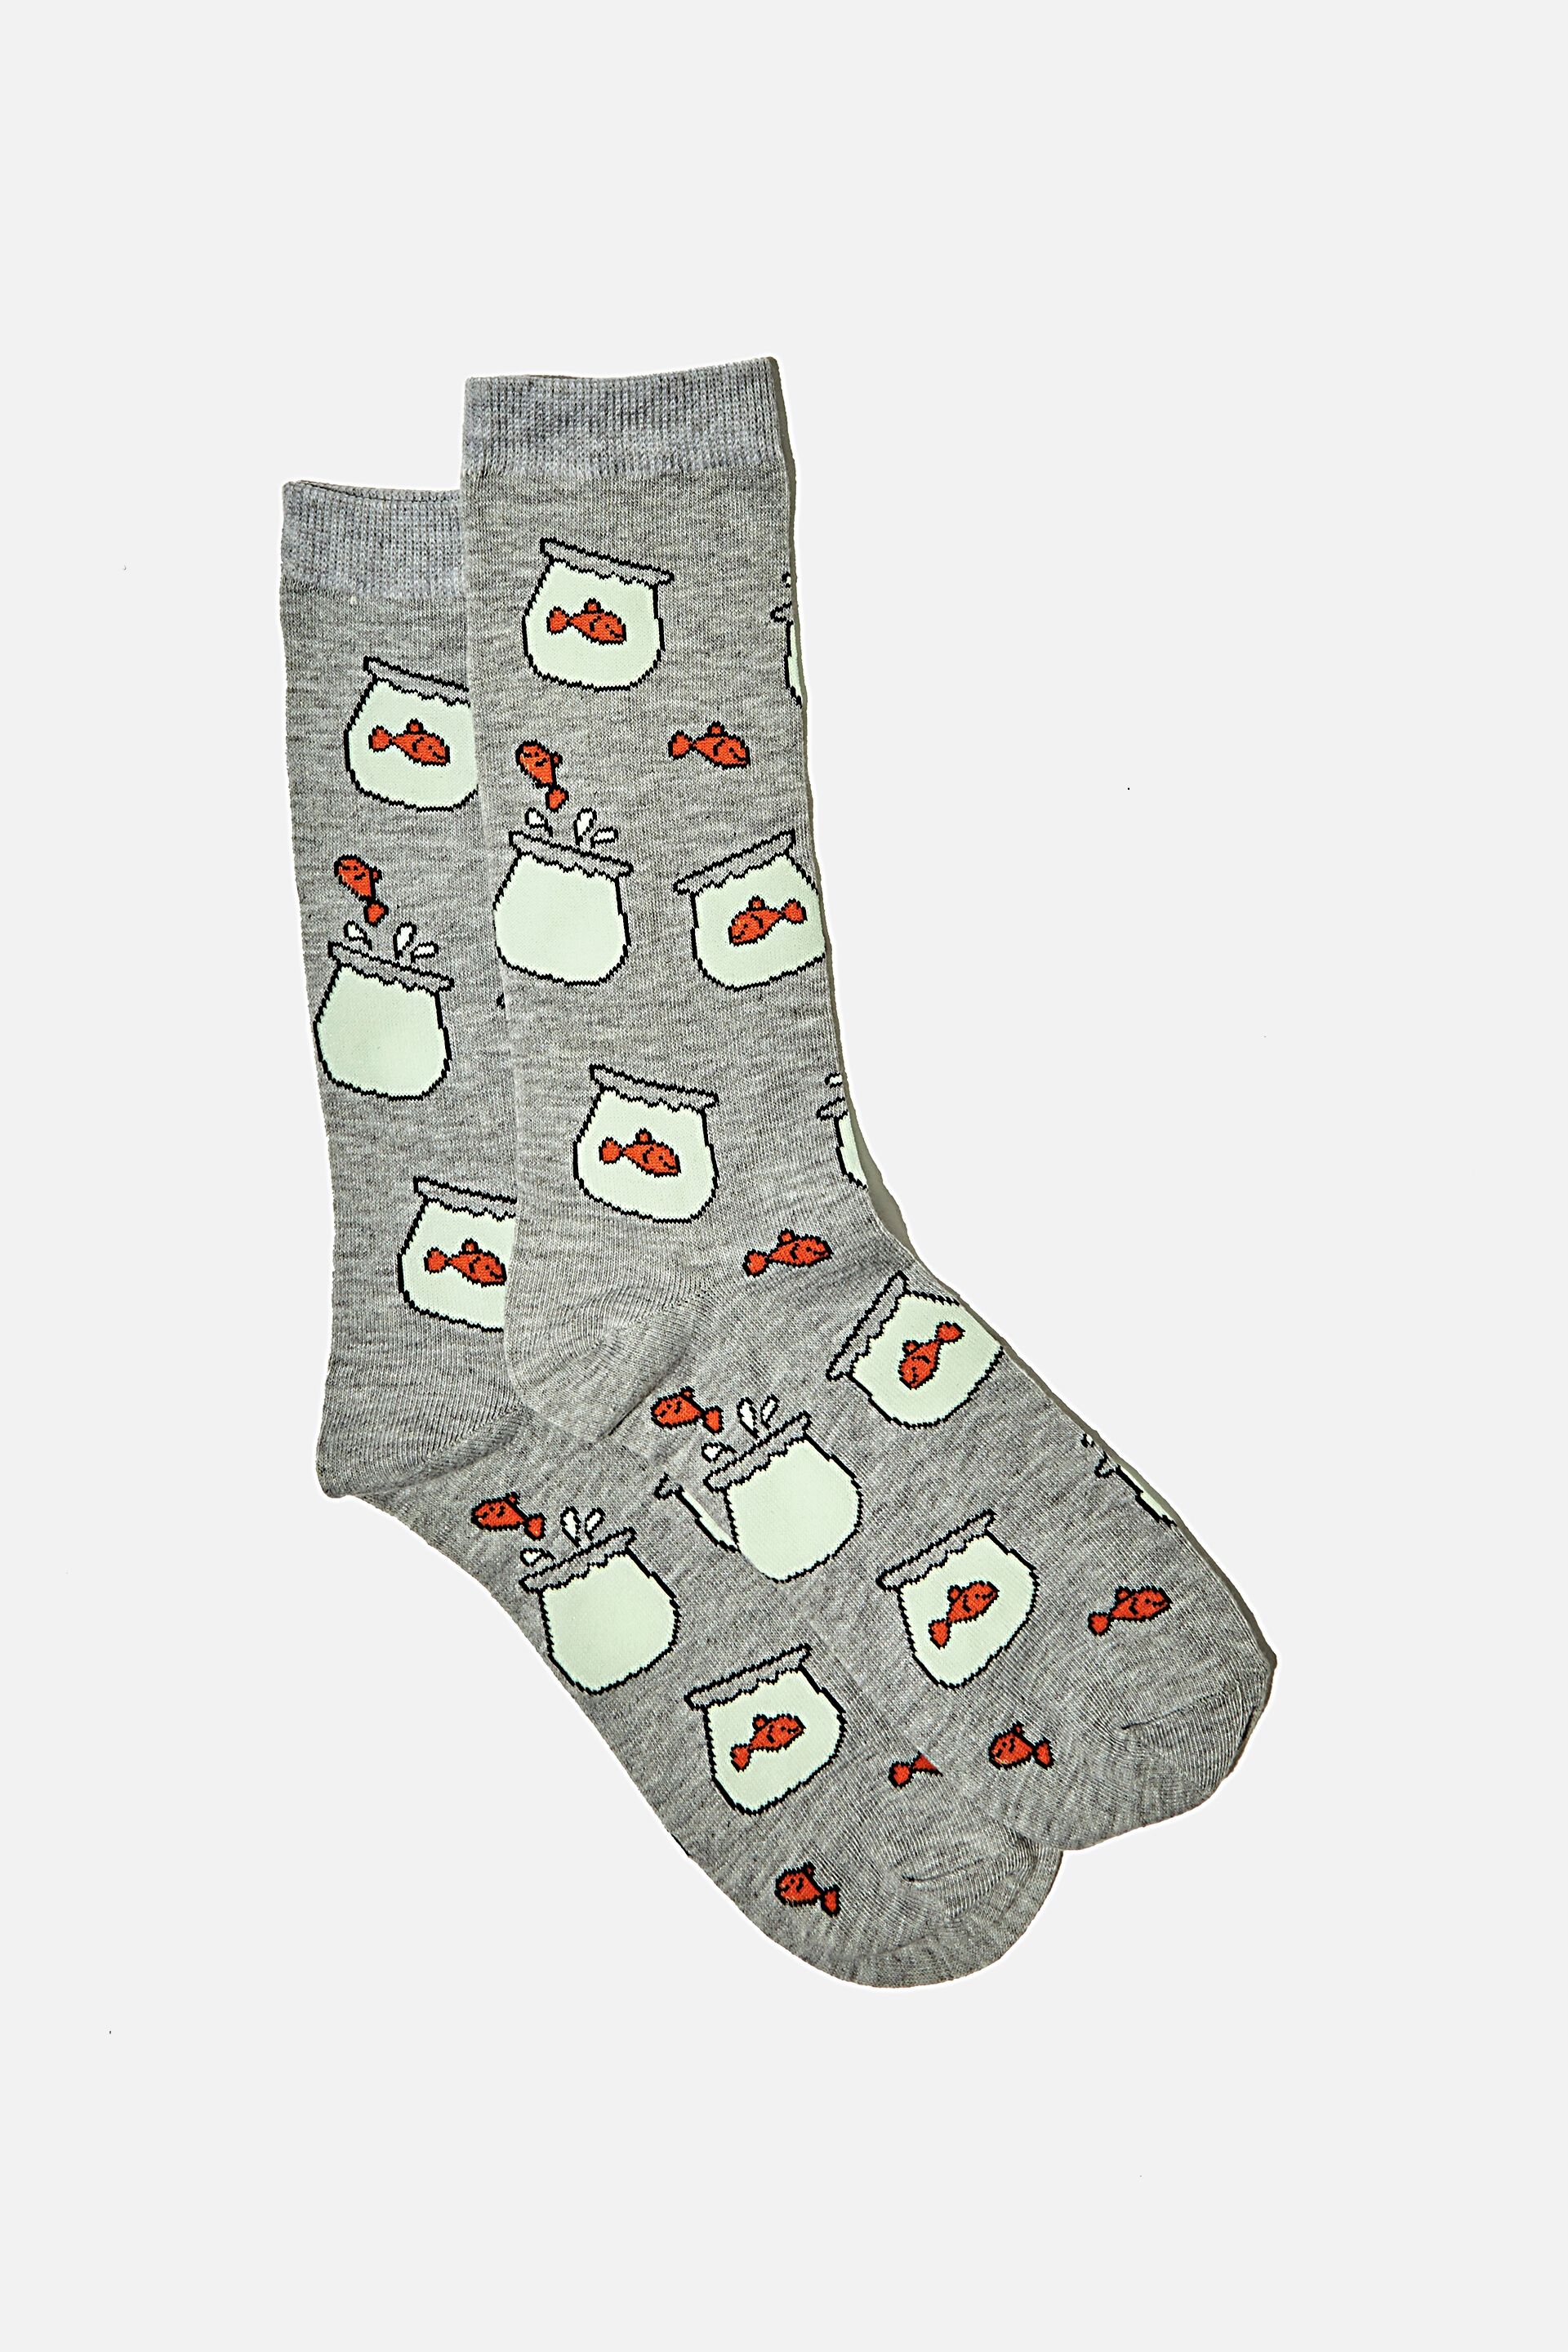 mens novelty socks